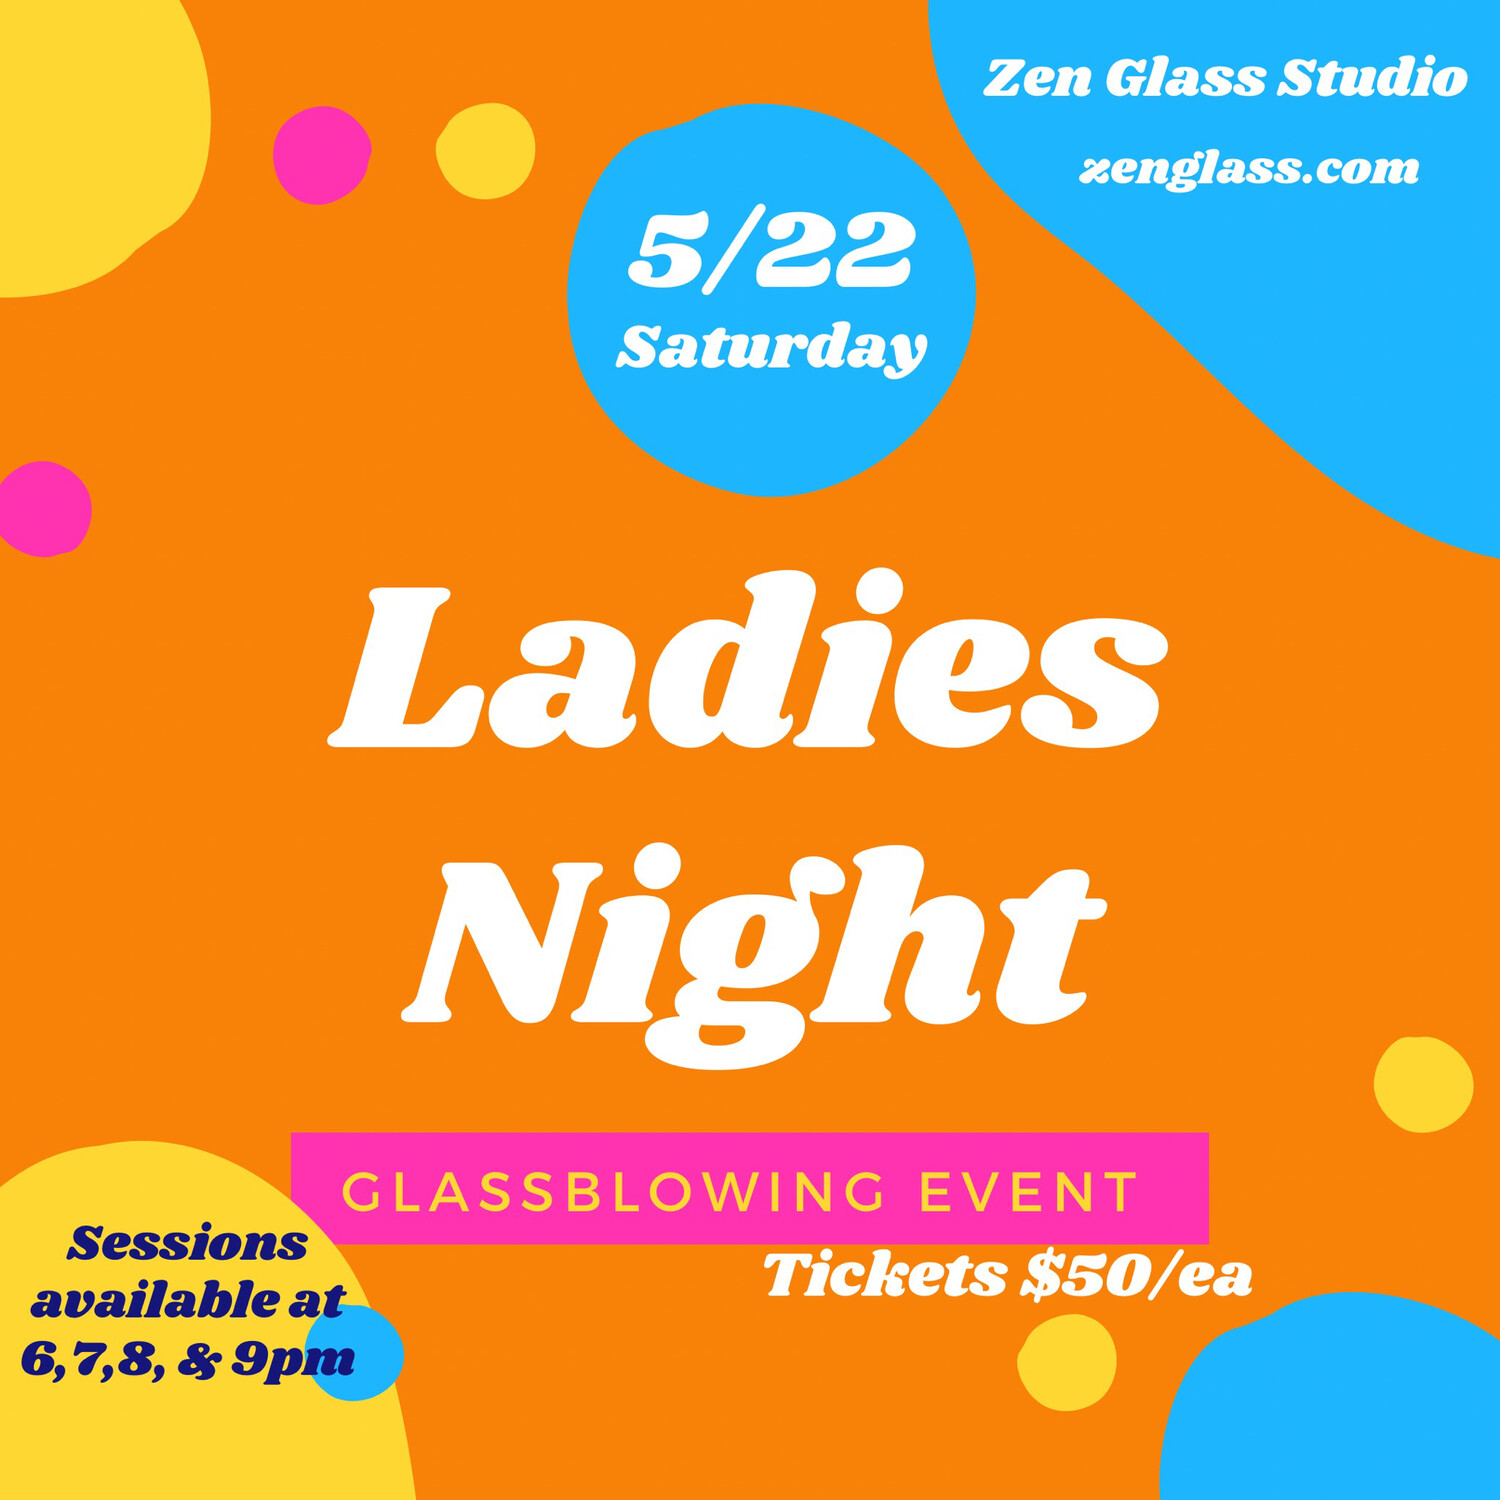 Ladies Night Saturday May 22nd 8pm